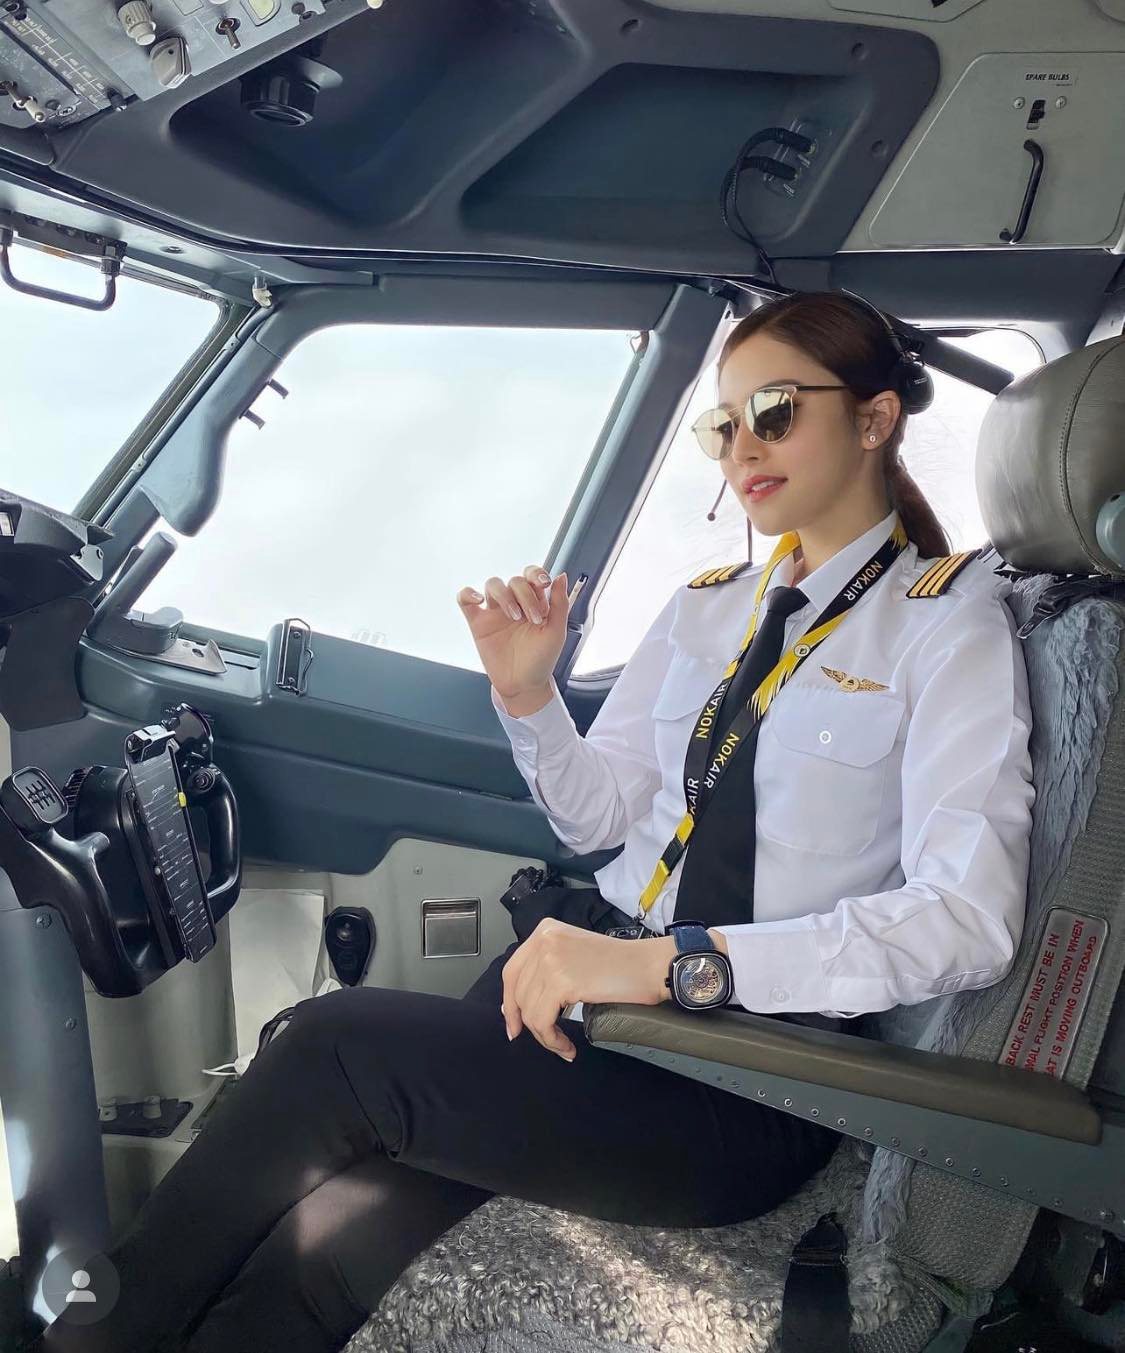 Evelyn là nữ cơ trưởng người Thái Lan, hiện tại đang làm việc cho hãng hàng không Nok Air.